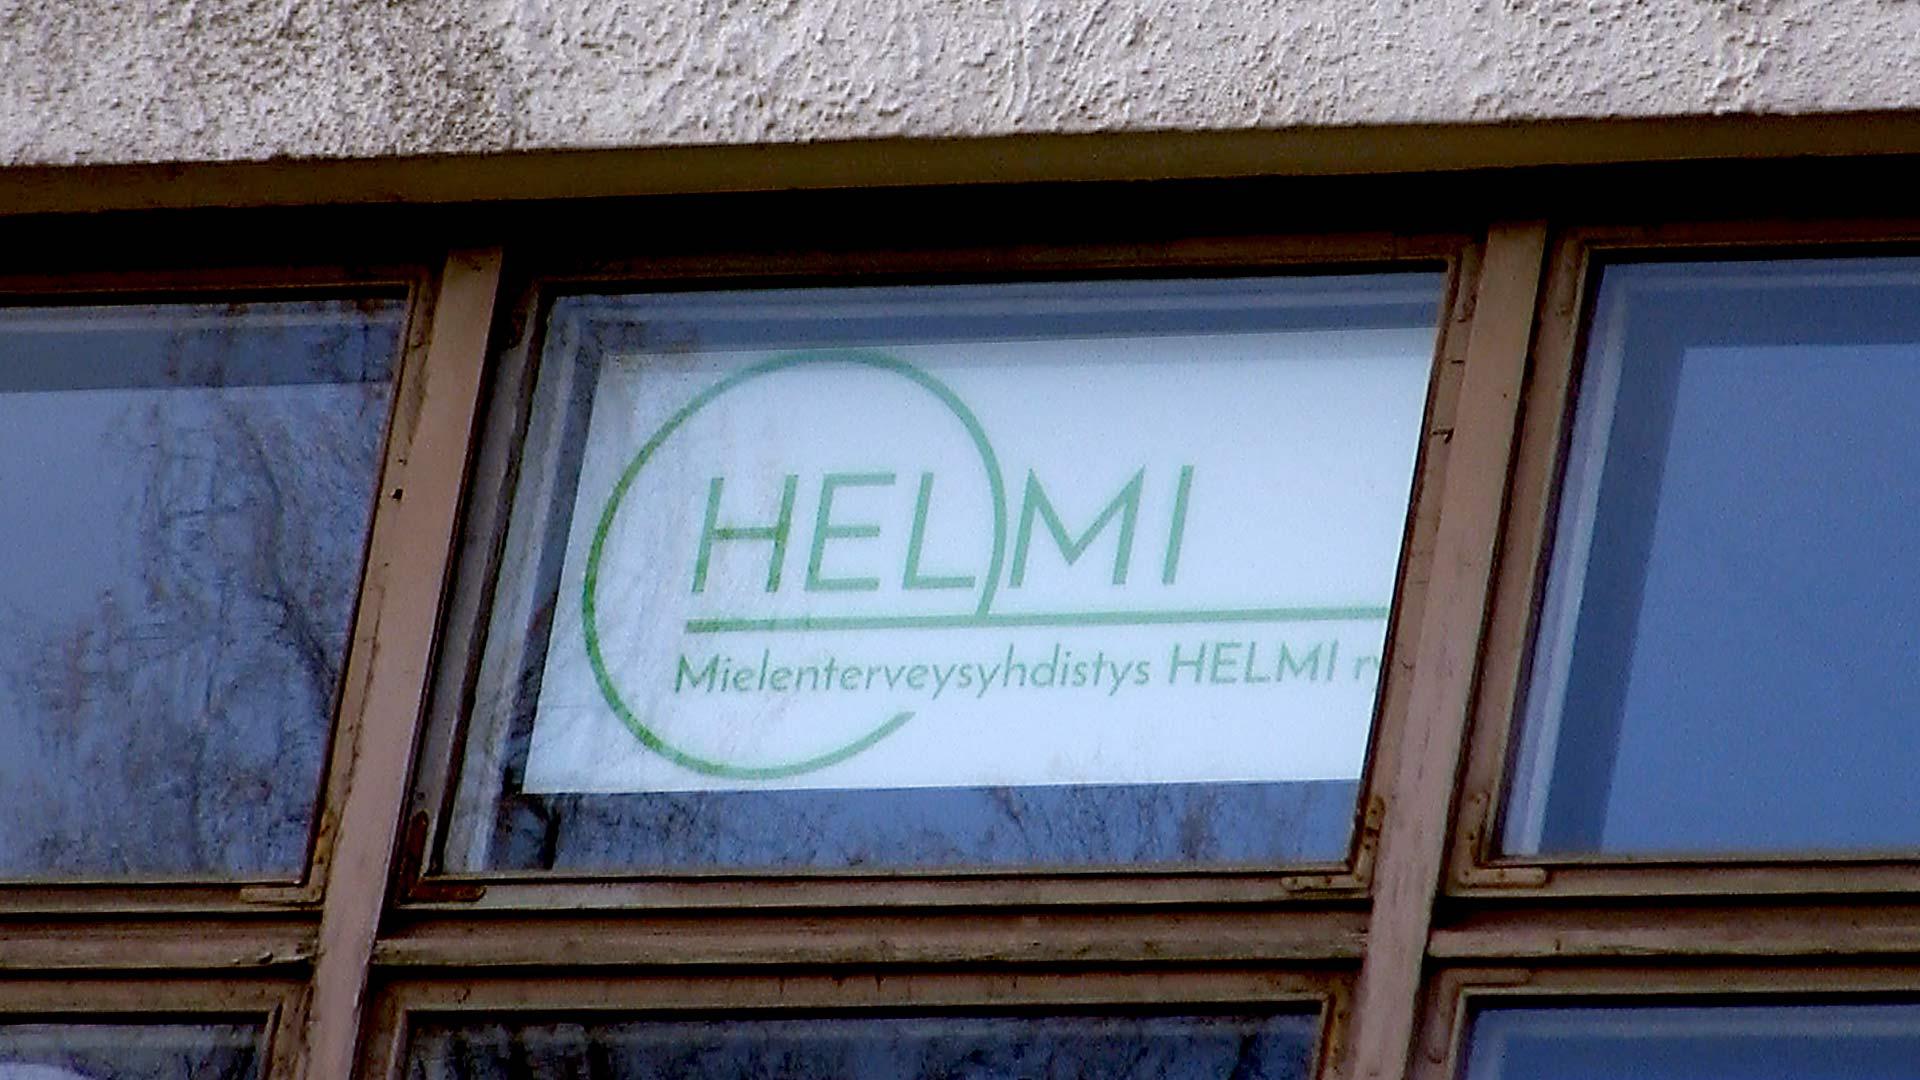 Mielenterveysyhdistys Helmi Archives - Mieletöntä valoa